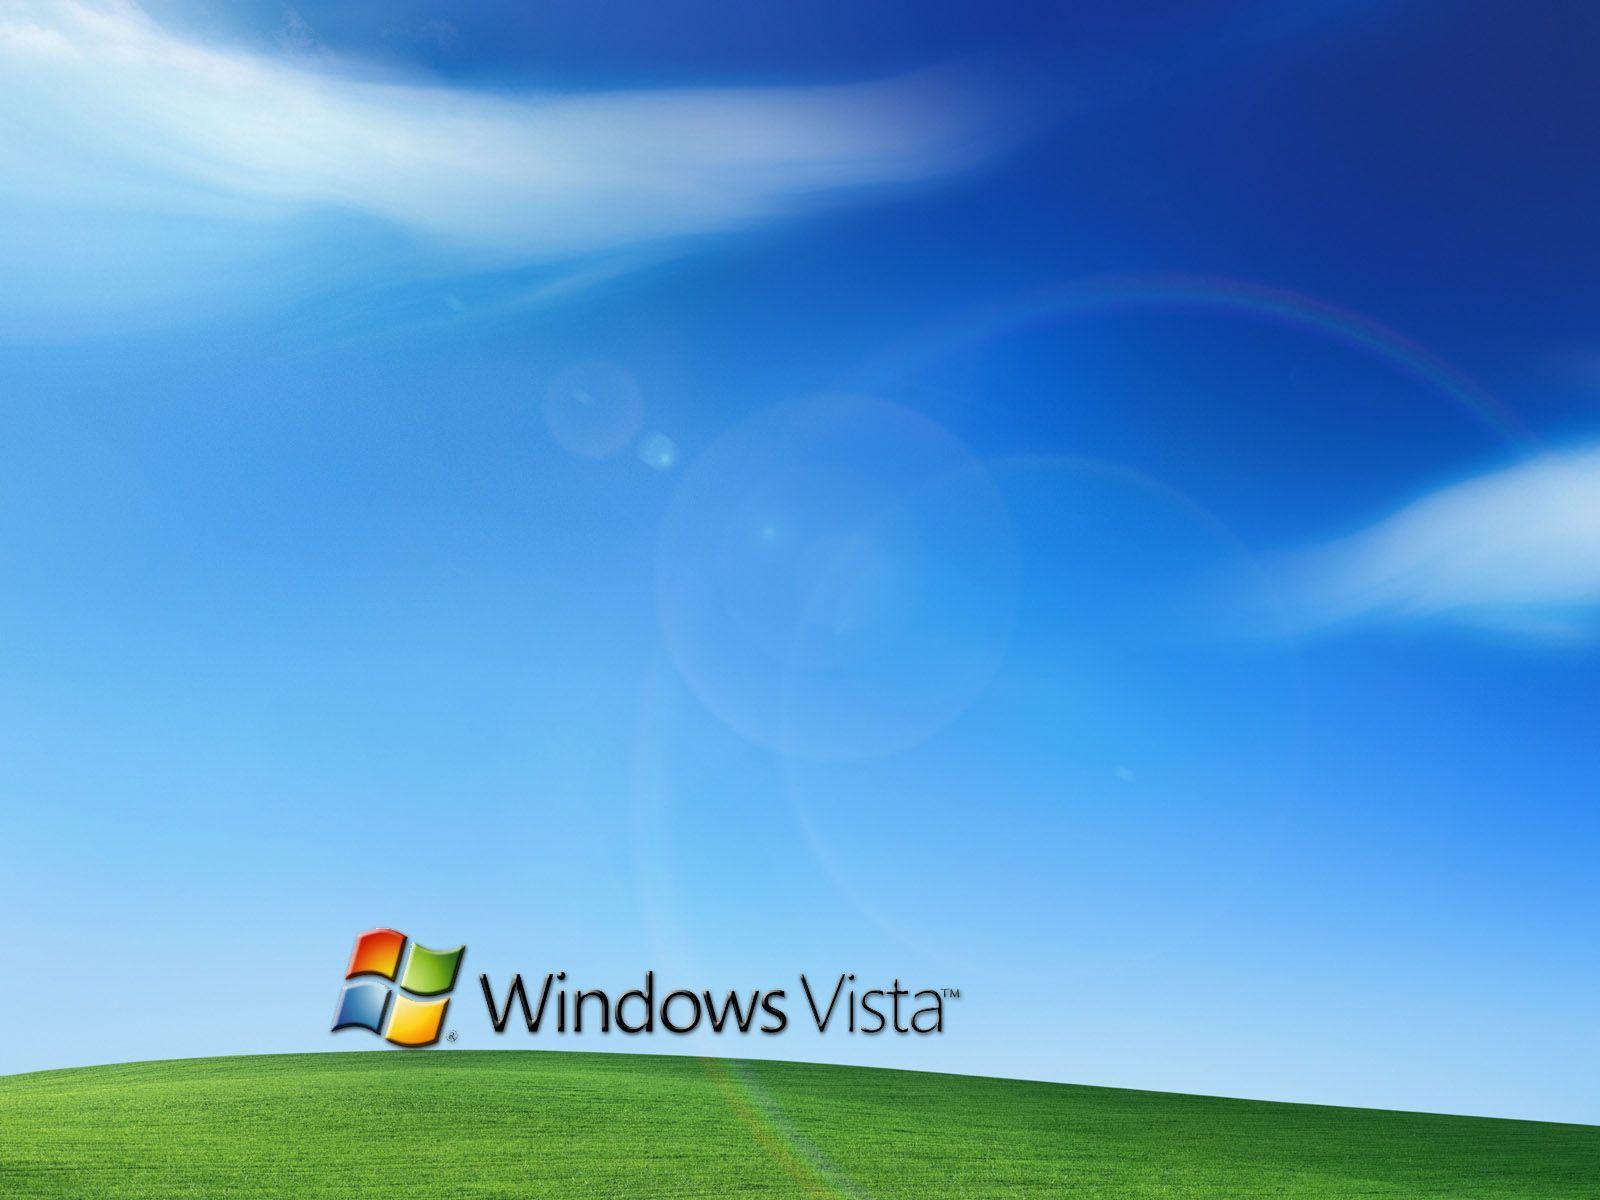 Windows Vista Wallpaper. Windows Vista Background